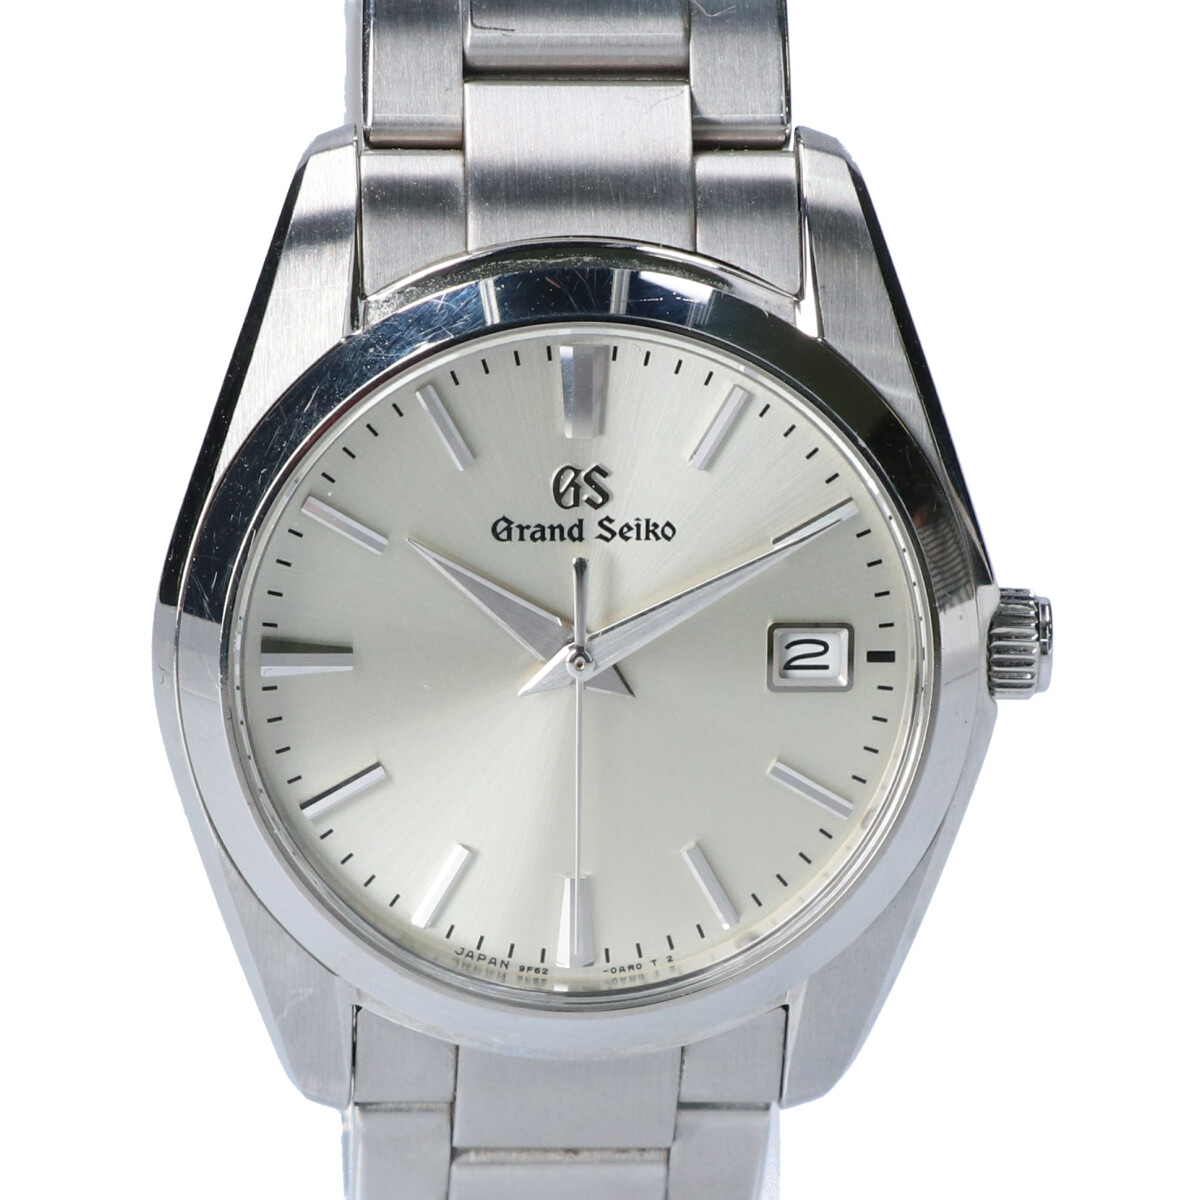 グランドセイコーのSBGX263 Grand Seiko Heritage Collection デイト SS クオーツ 時計の買取実績です。